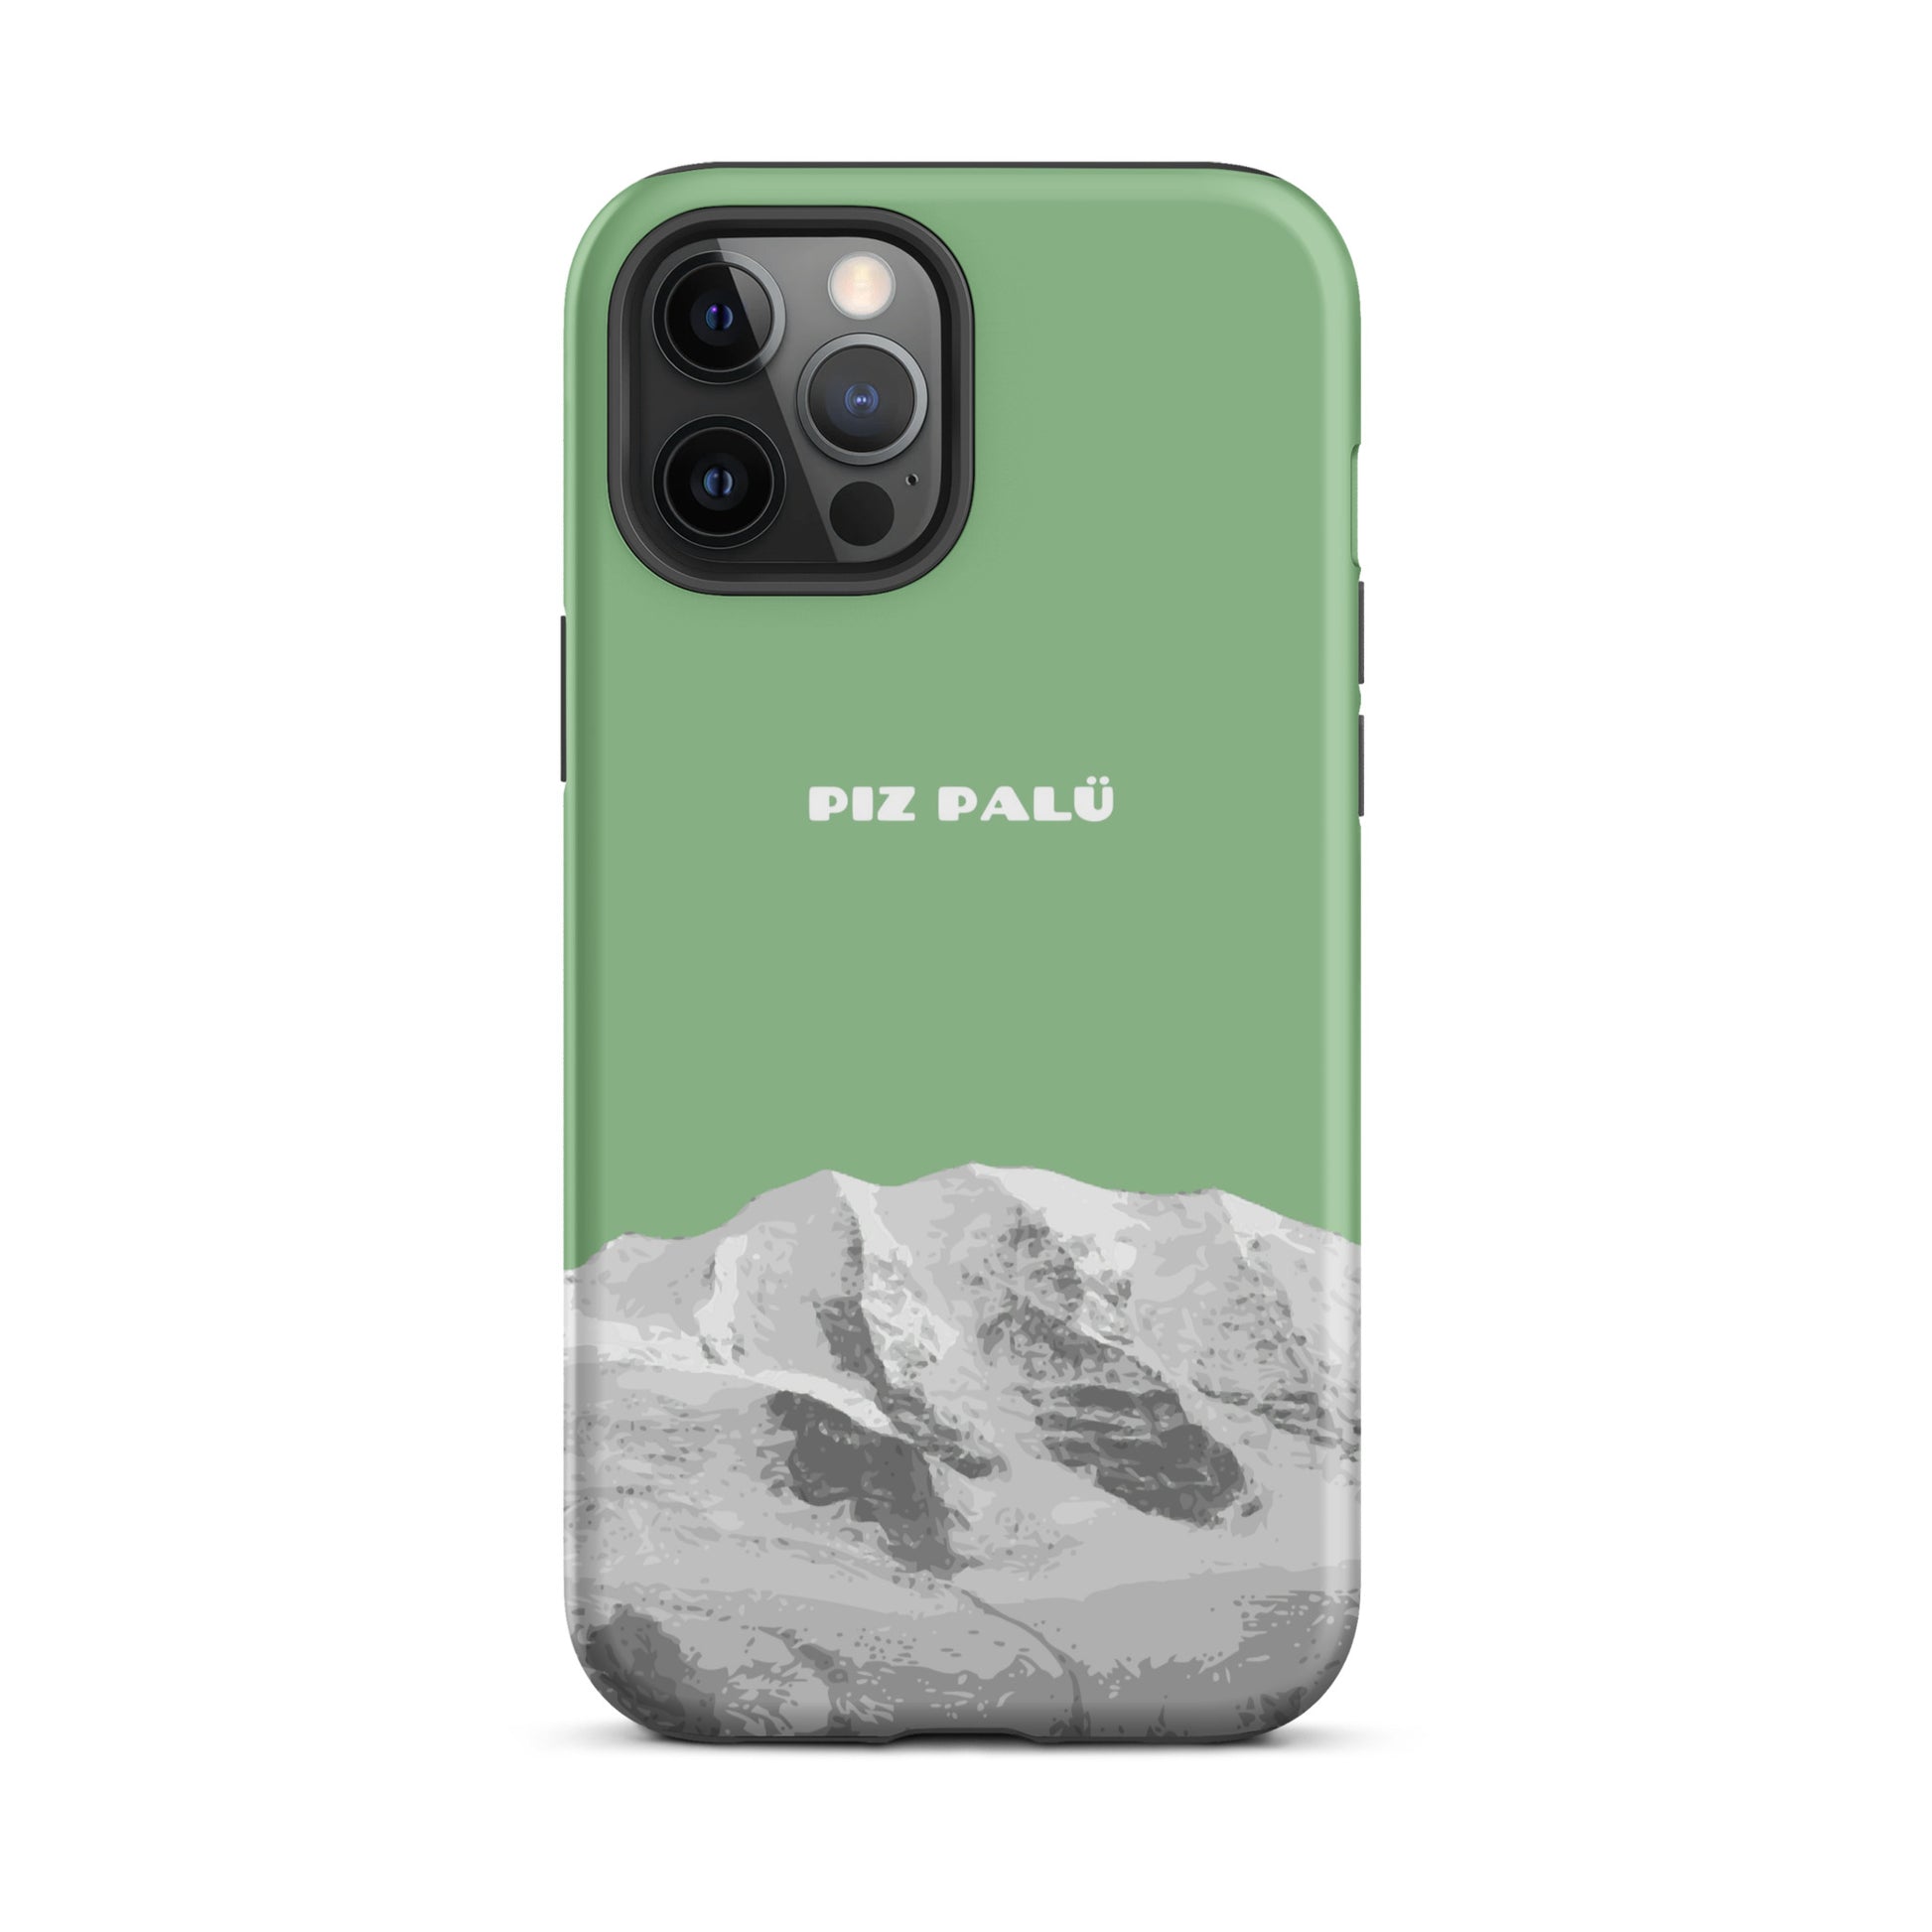 Hülle für das iPhone 12 Pro Max von Apple in der Farbe Hellgrün, dass den Piz Palü in Graubünden zeigt.